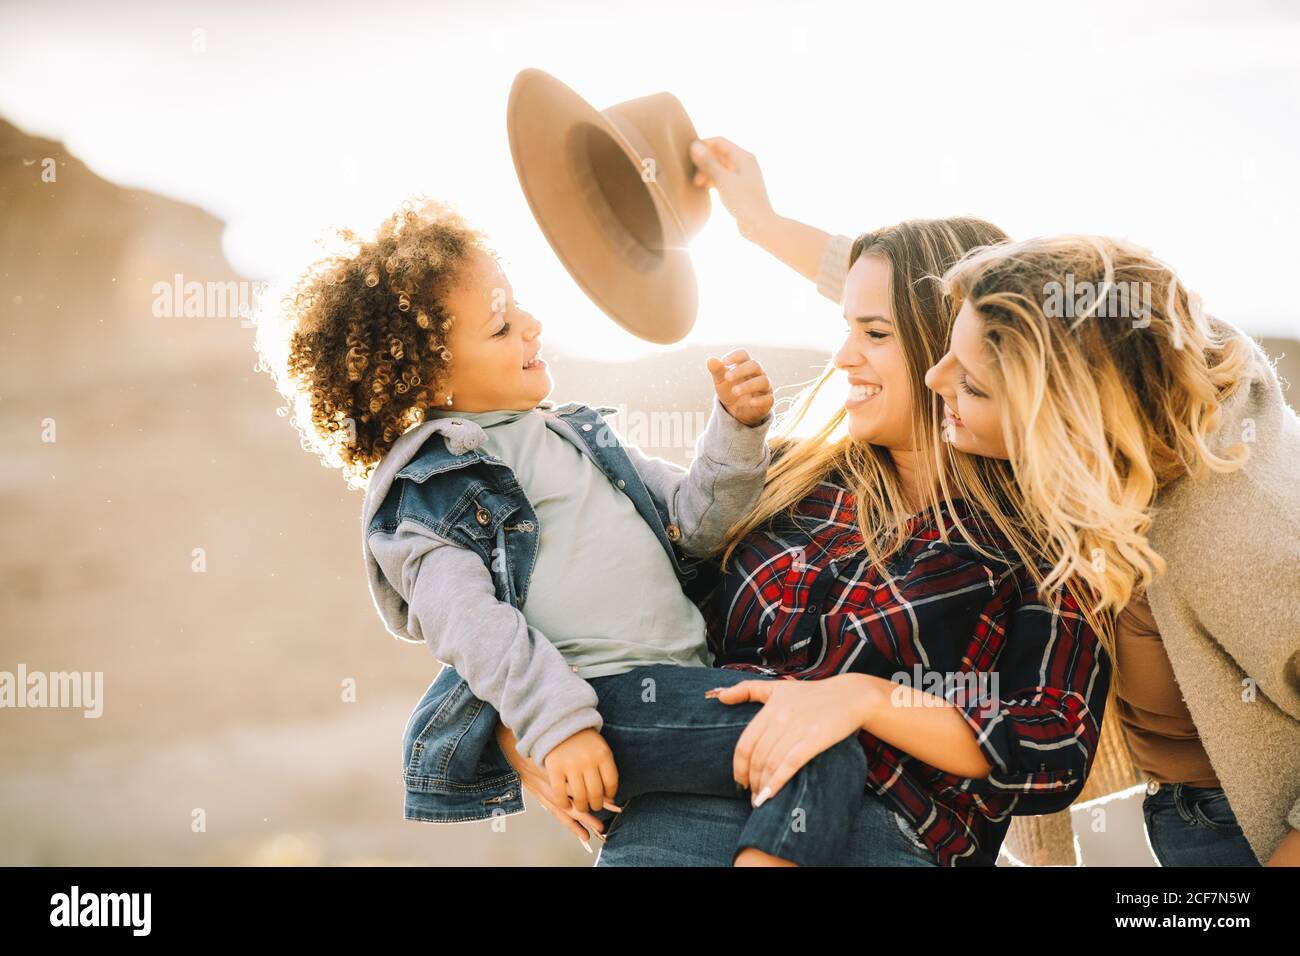 Fröhliche Frau im Karomuster hält in den Armen lässig Kleinkind mit lockigem Haar, während fröhliche Freundin Hut auf Kind auf die Natur am Tag Stockfoto